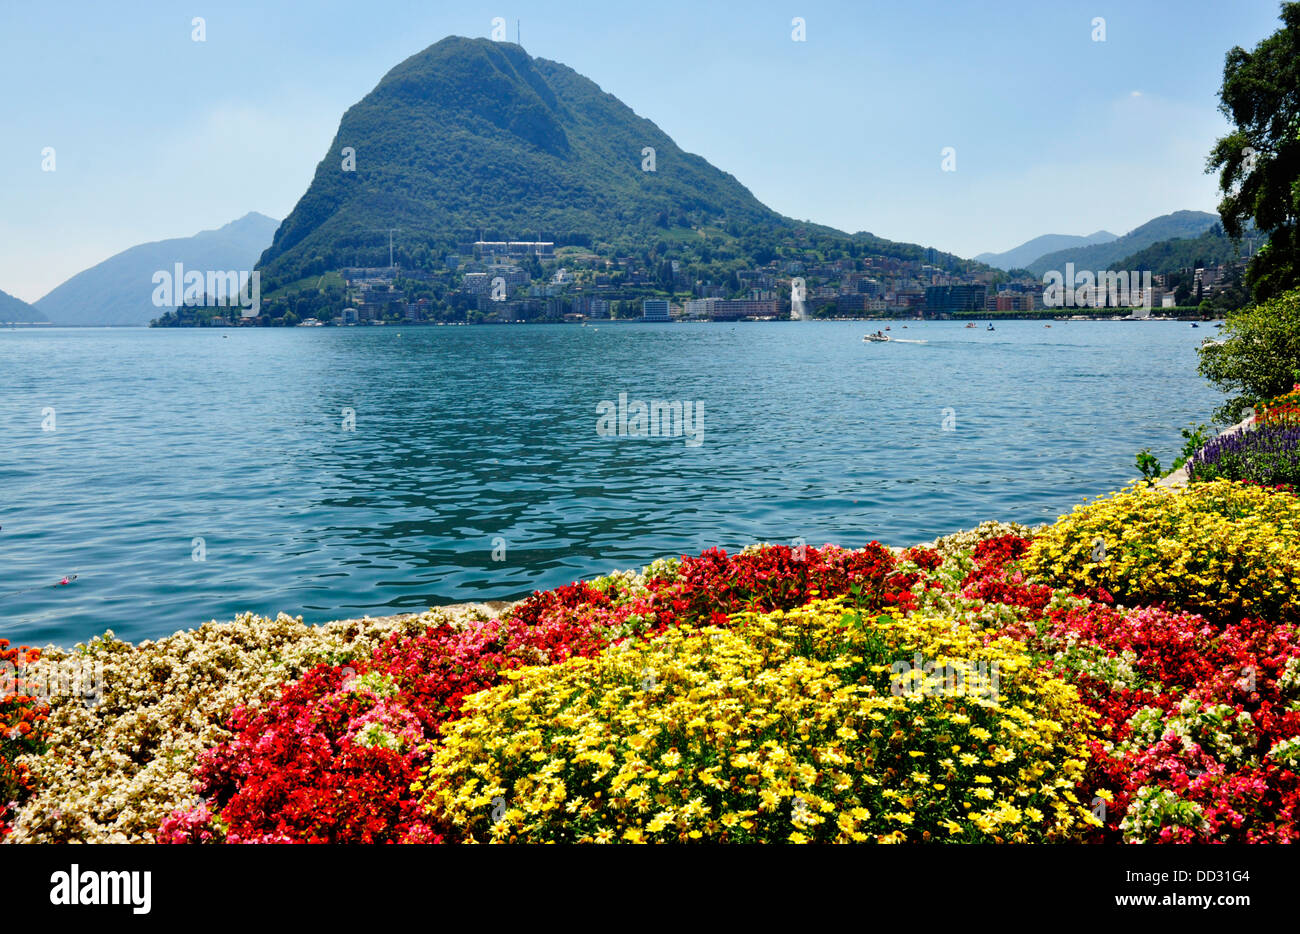 Svizzera - Lago di Lugano - Città di Lugano - i giardini colorati accanto al lago - Vista sul lago al Monte Bre - la luce del sole Foto Stock